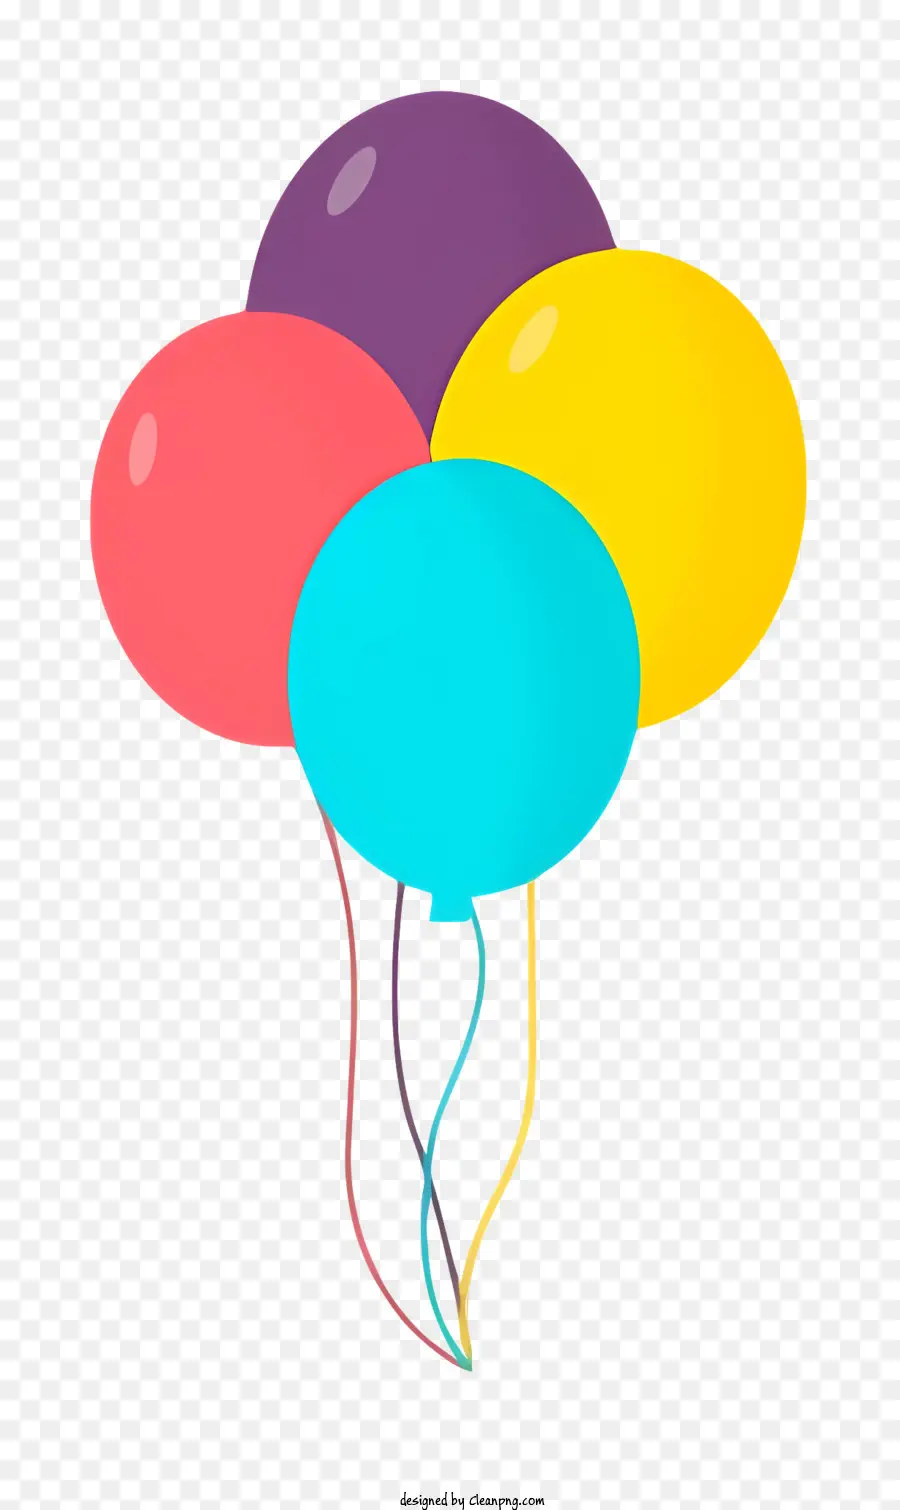 Luftballons farbenfrohe schwimmende Luftstränge - Bunte Luftballons schweben in koordiniertem Muster, freudige Szene